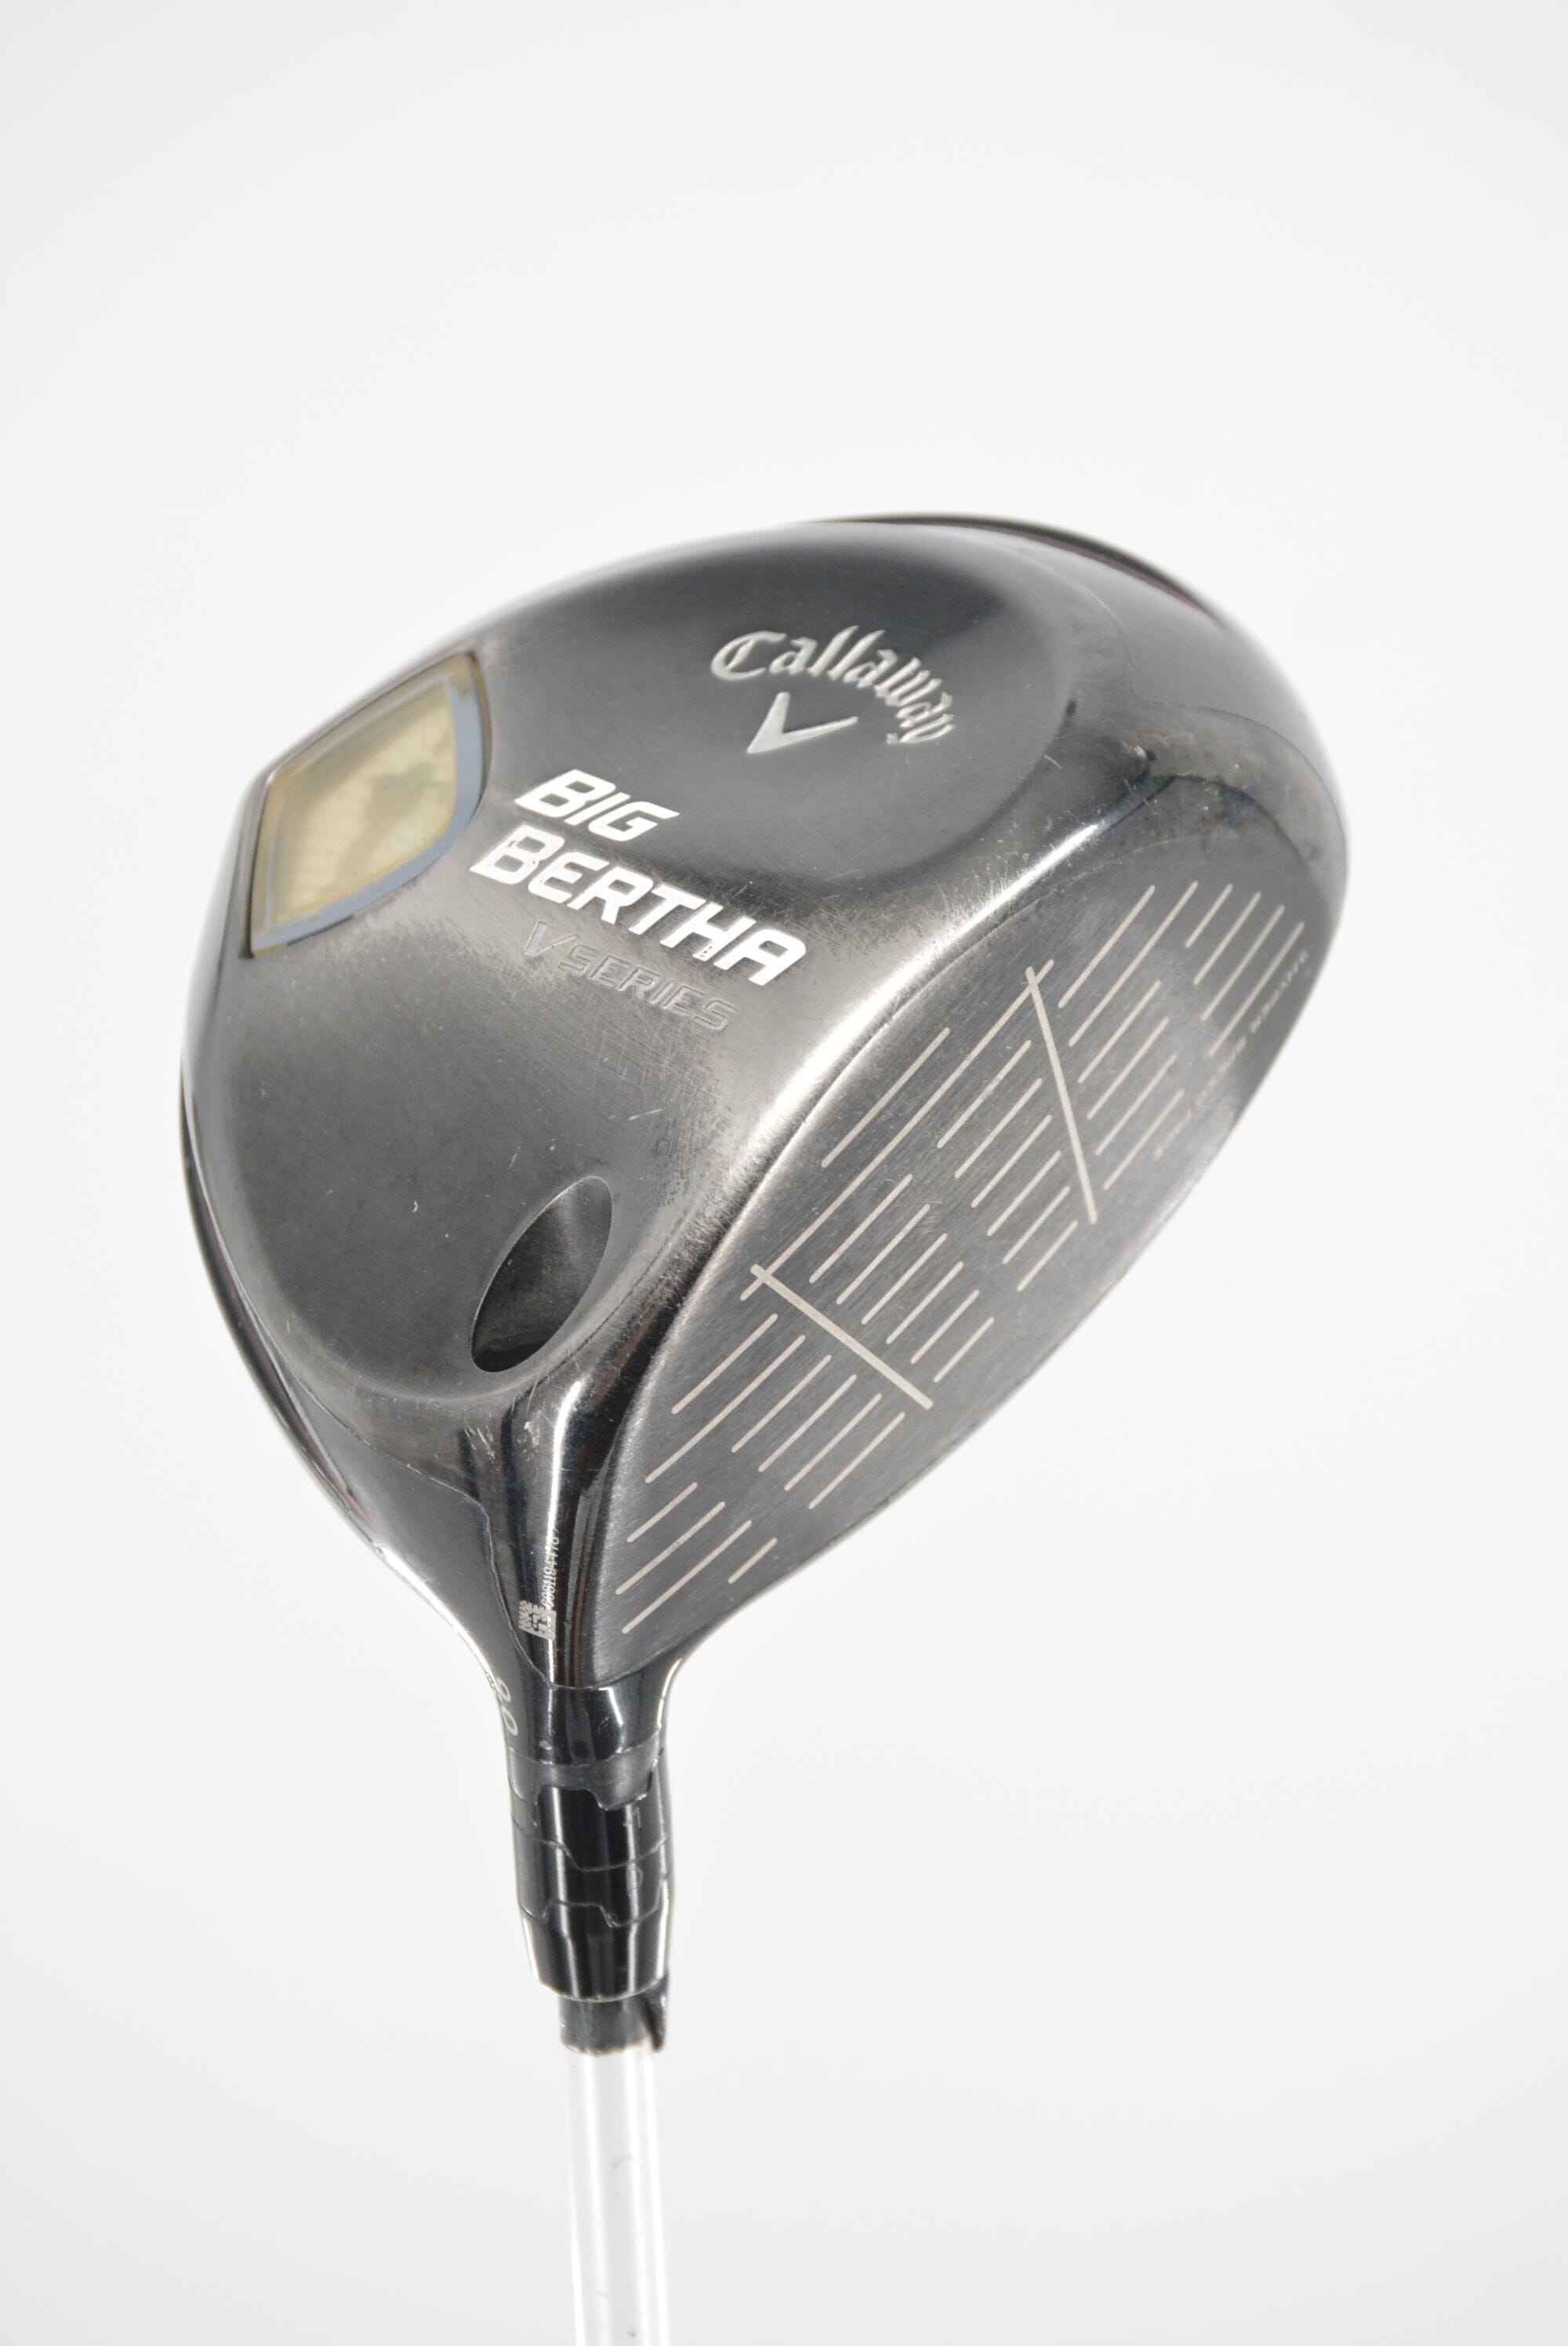 Callaway Big Bertha V Series 9 Degree Driver S Flex 45.5" Golf Clubs GolfRoots 